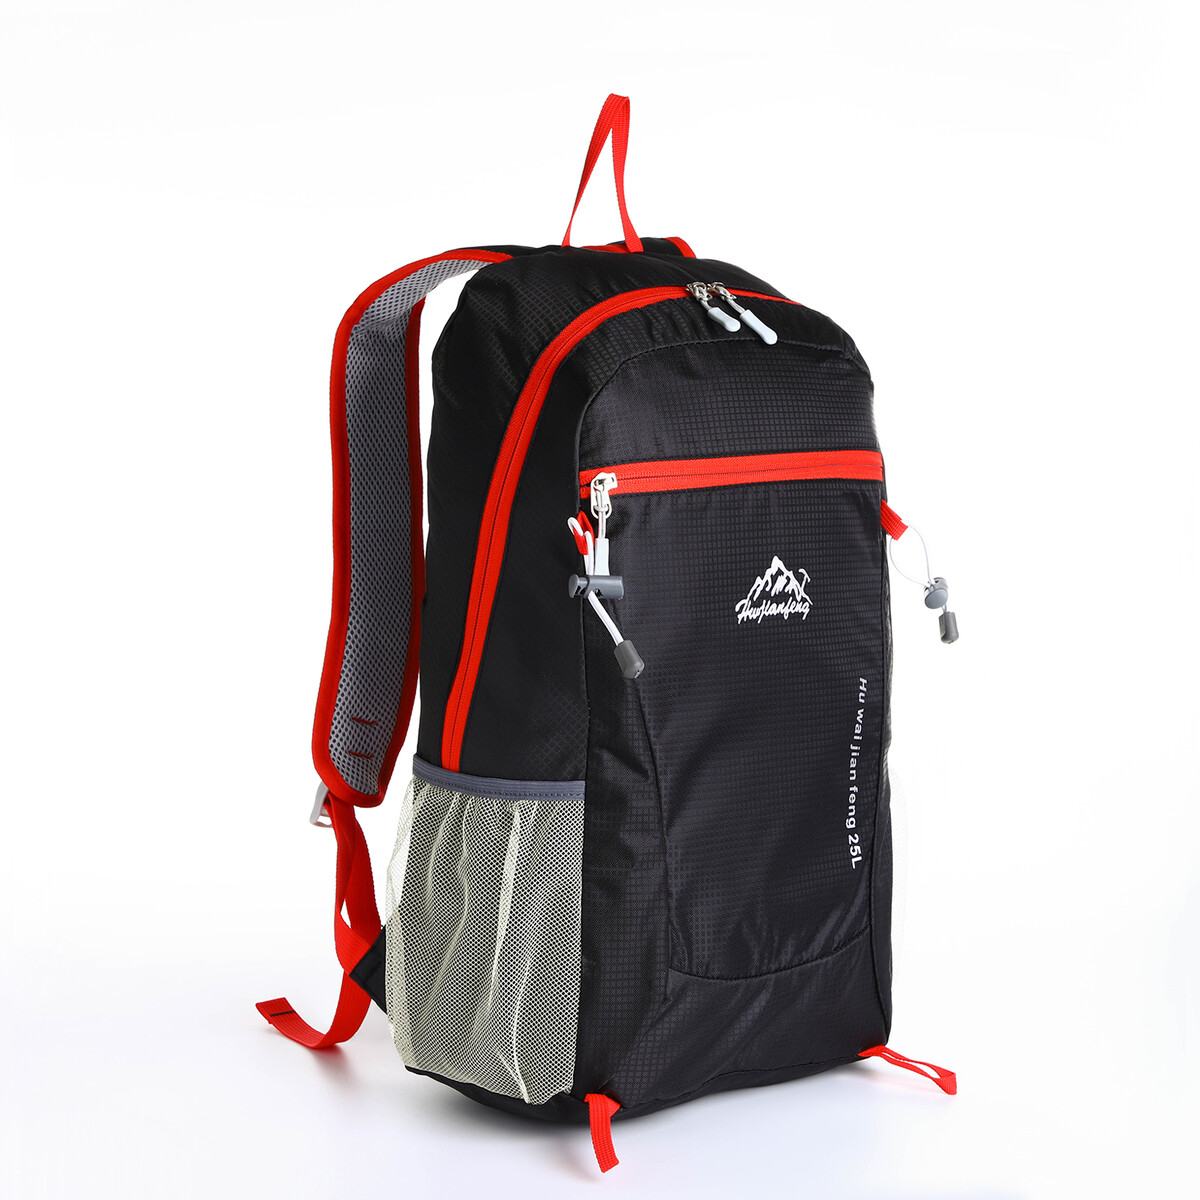 Рюкзак туристический 25л, складной, водонепроницаемый, на молнии, 4 кармана, цвет черный рюкзак nonstopika action бирюзовый складной